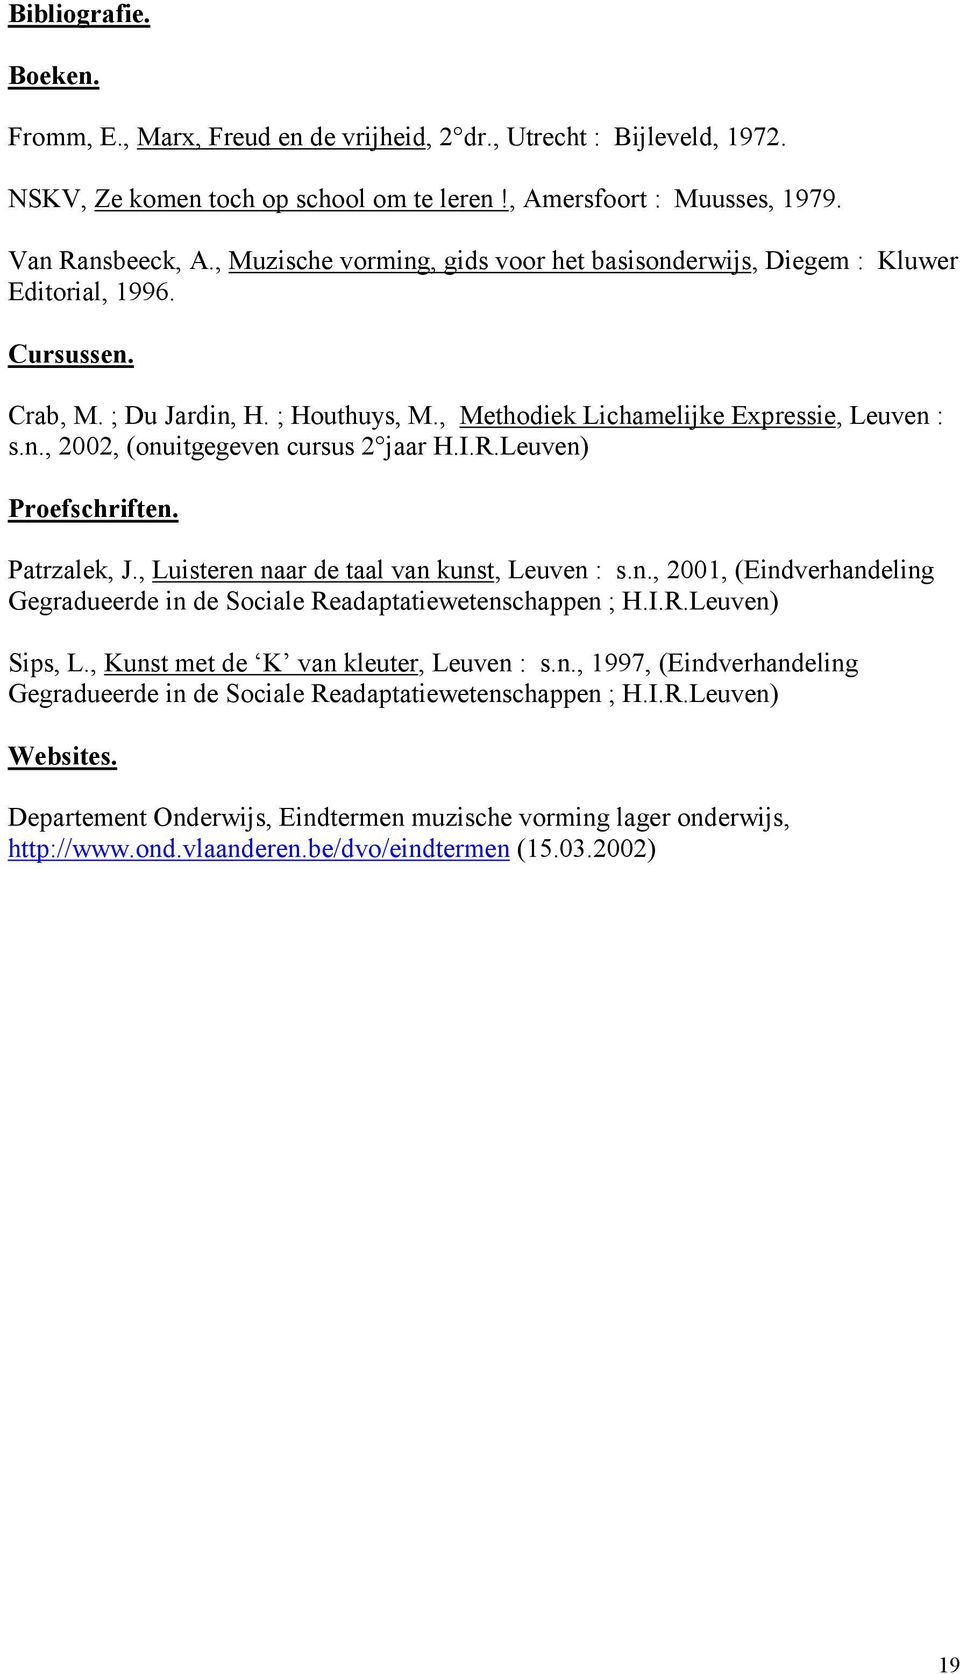 I.R.Leuven) Proefschriften. Patrzalek, J., Luisteren naar de taal van kunst, Leuven : s.n., 2001, (Eindverhandeling Gegradueerde in de Sociale Readaptatiewetenschappen ; H.I.R.Leuven) Sips, L.